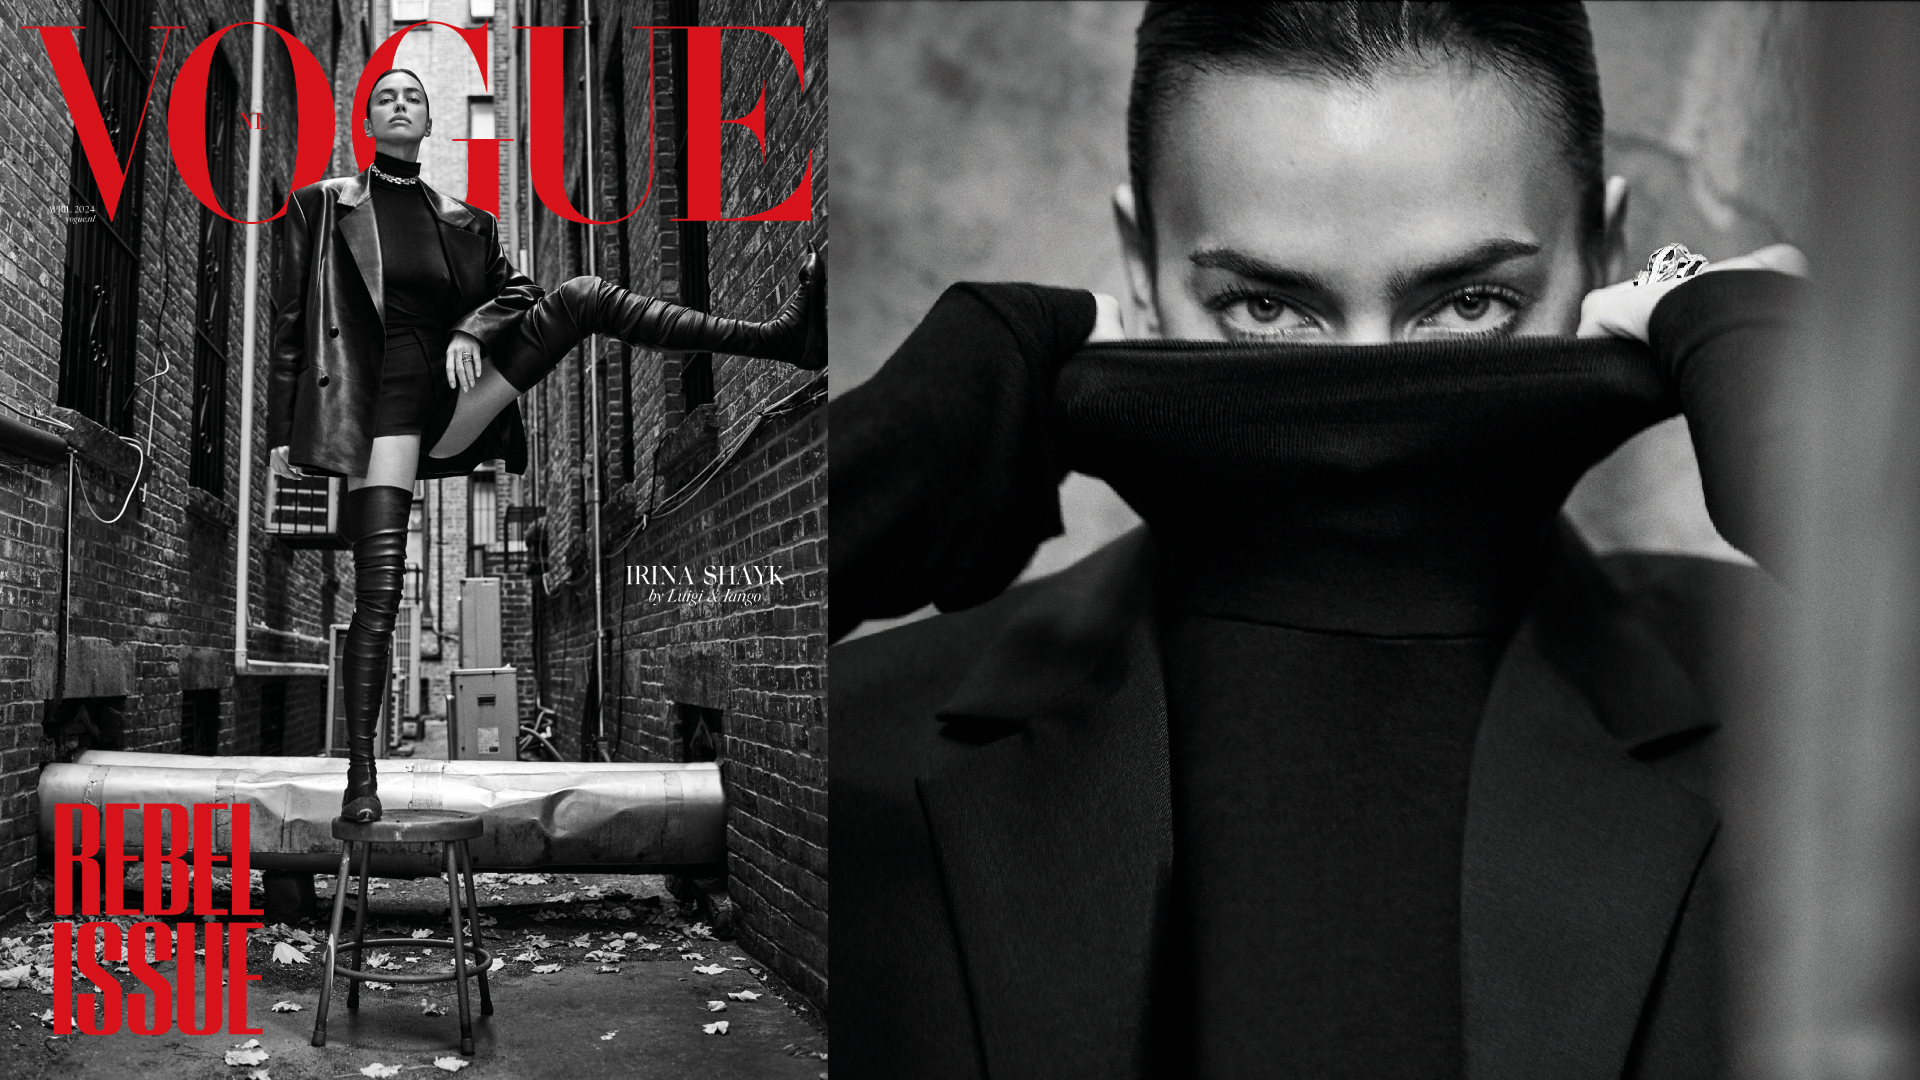 Rebel rebel! Dit is Vogue’s aprilnummer met topmodel Irina Shayk op de cover